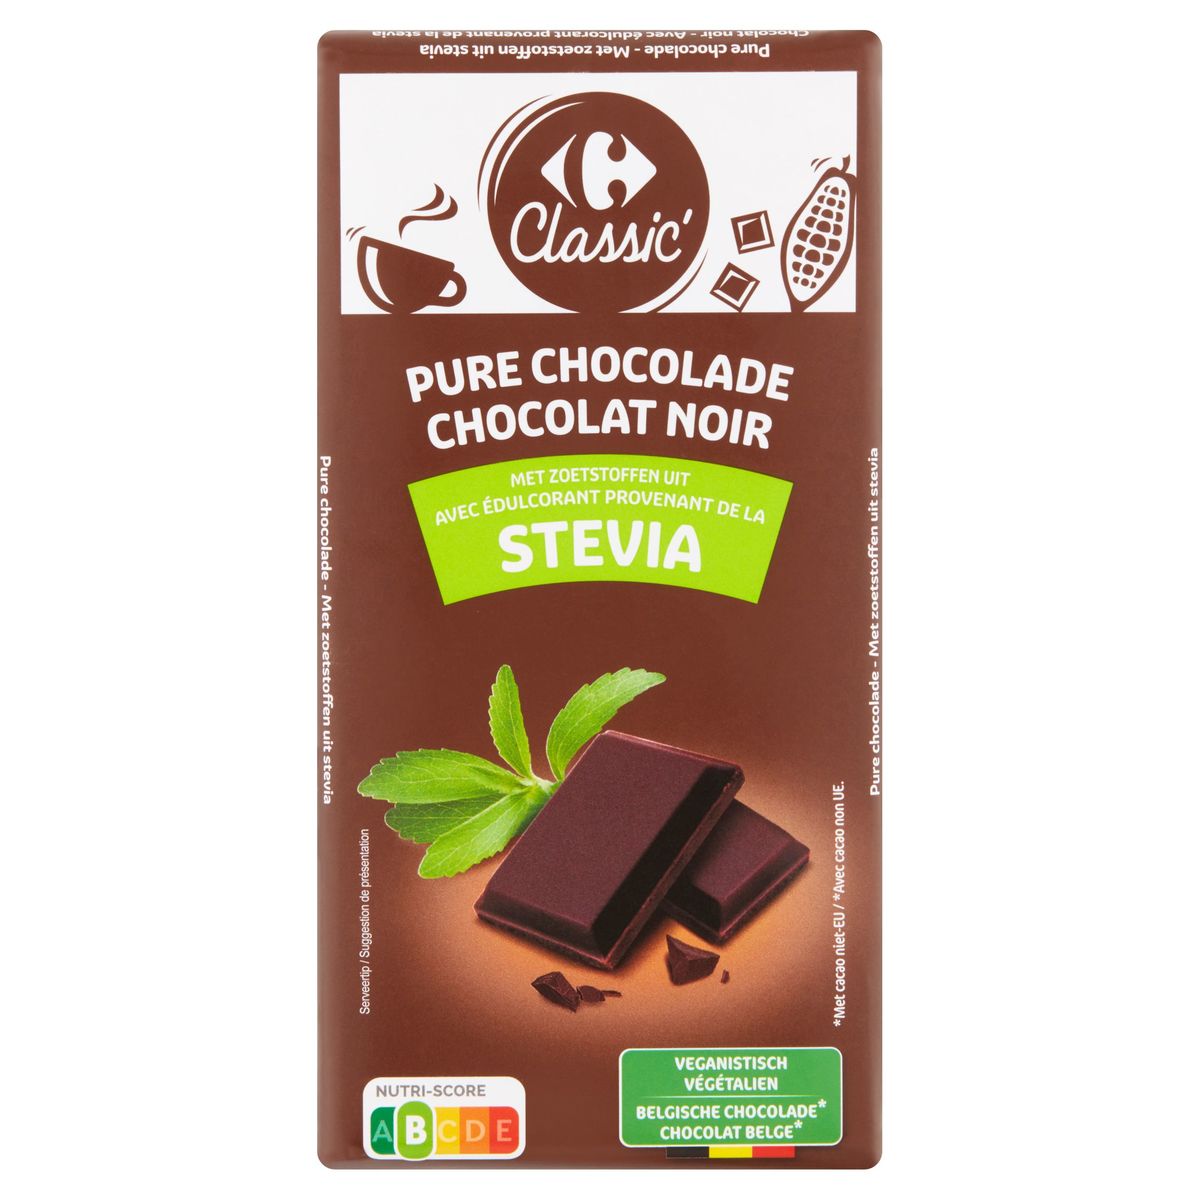 Tablette chocolat noir sans sucre ajouté (édulcorant : maltitol) – Cacao  55,7% minimum – 100g